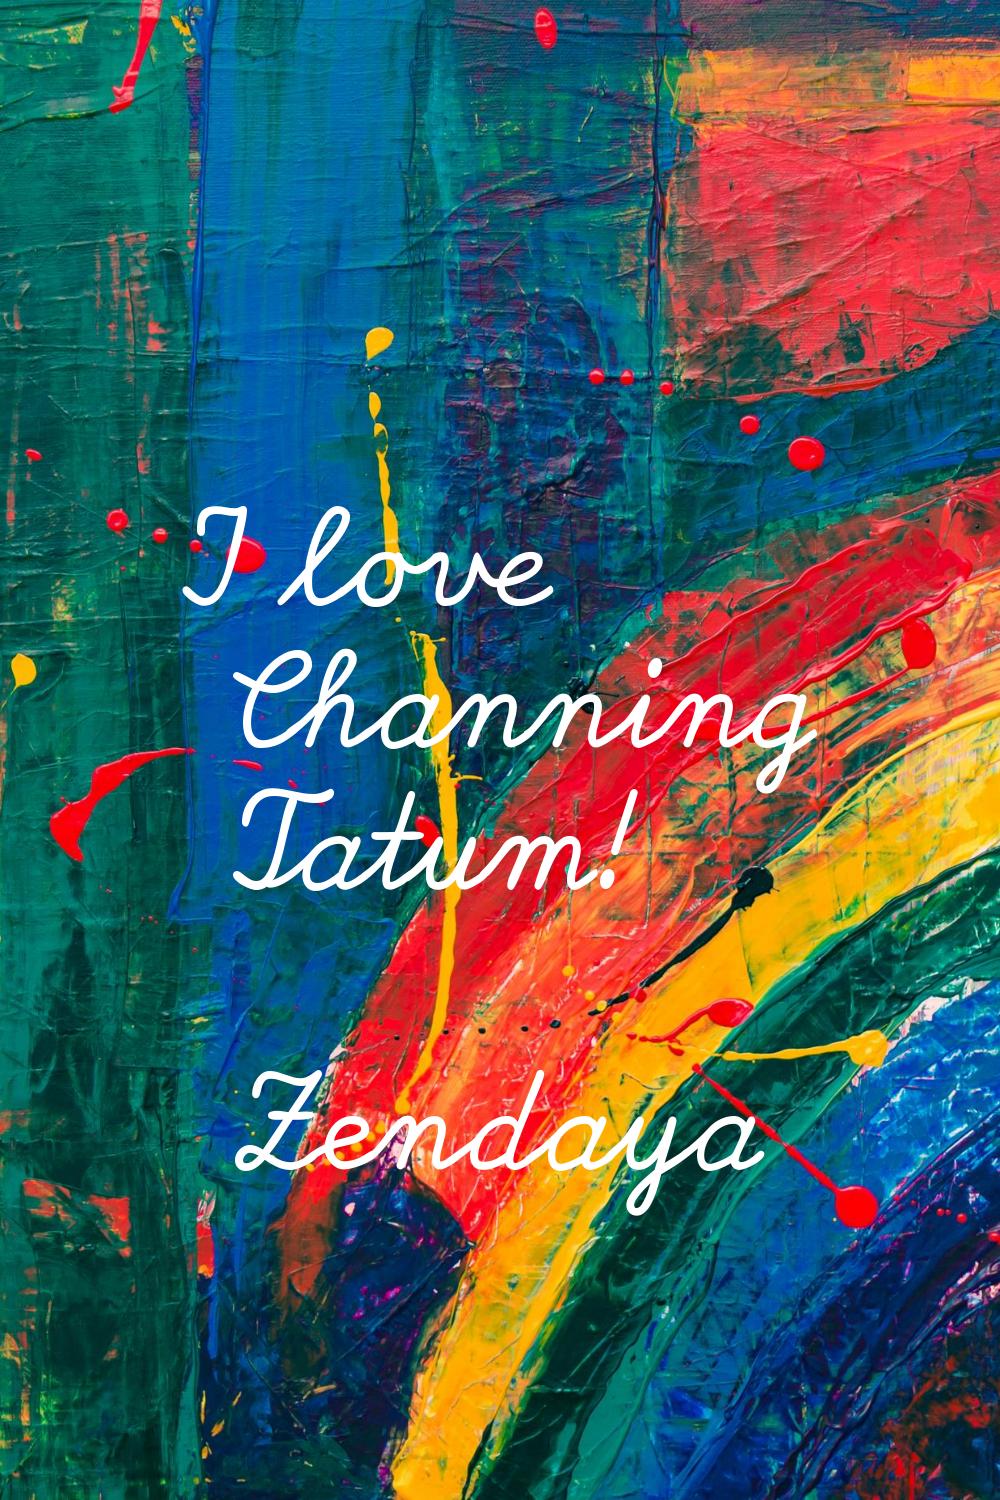 I love Channing Tatum!